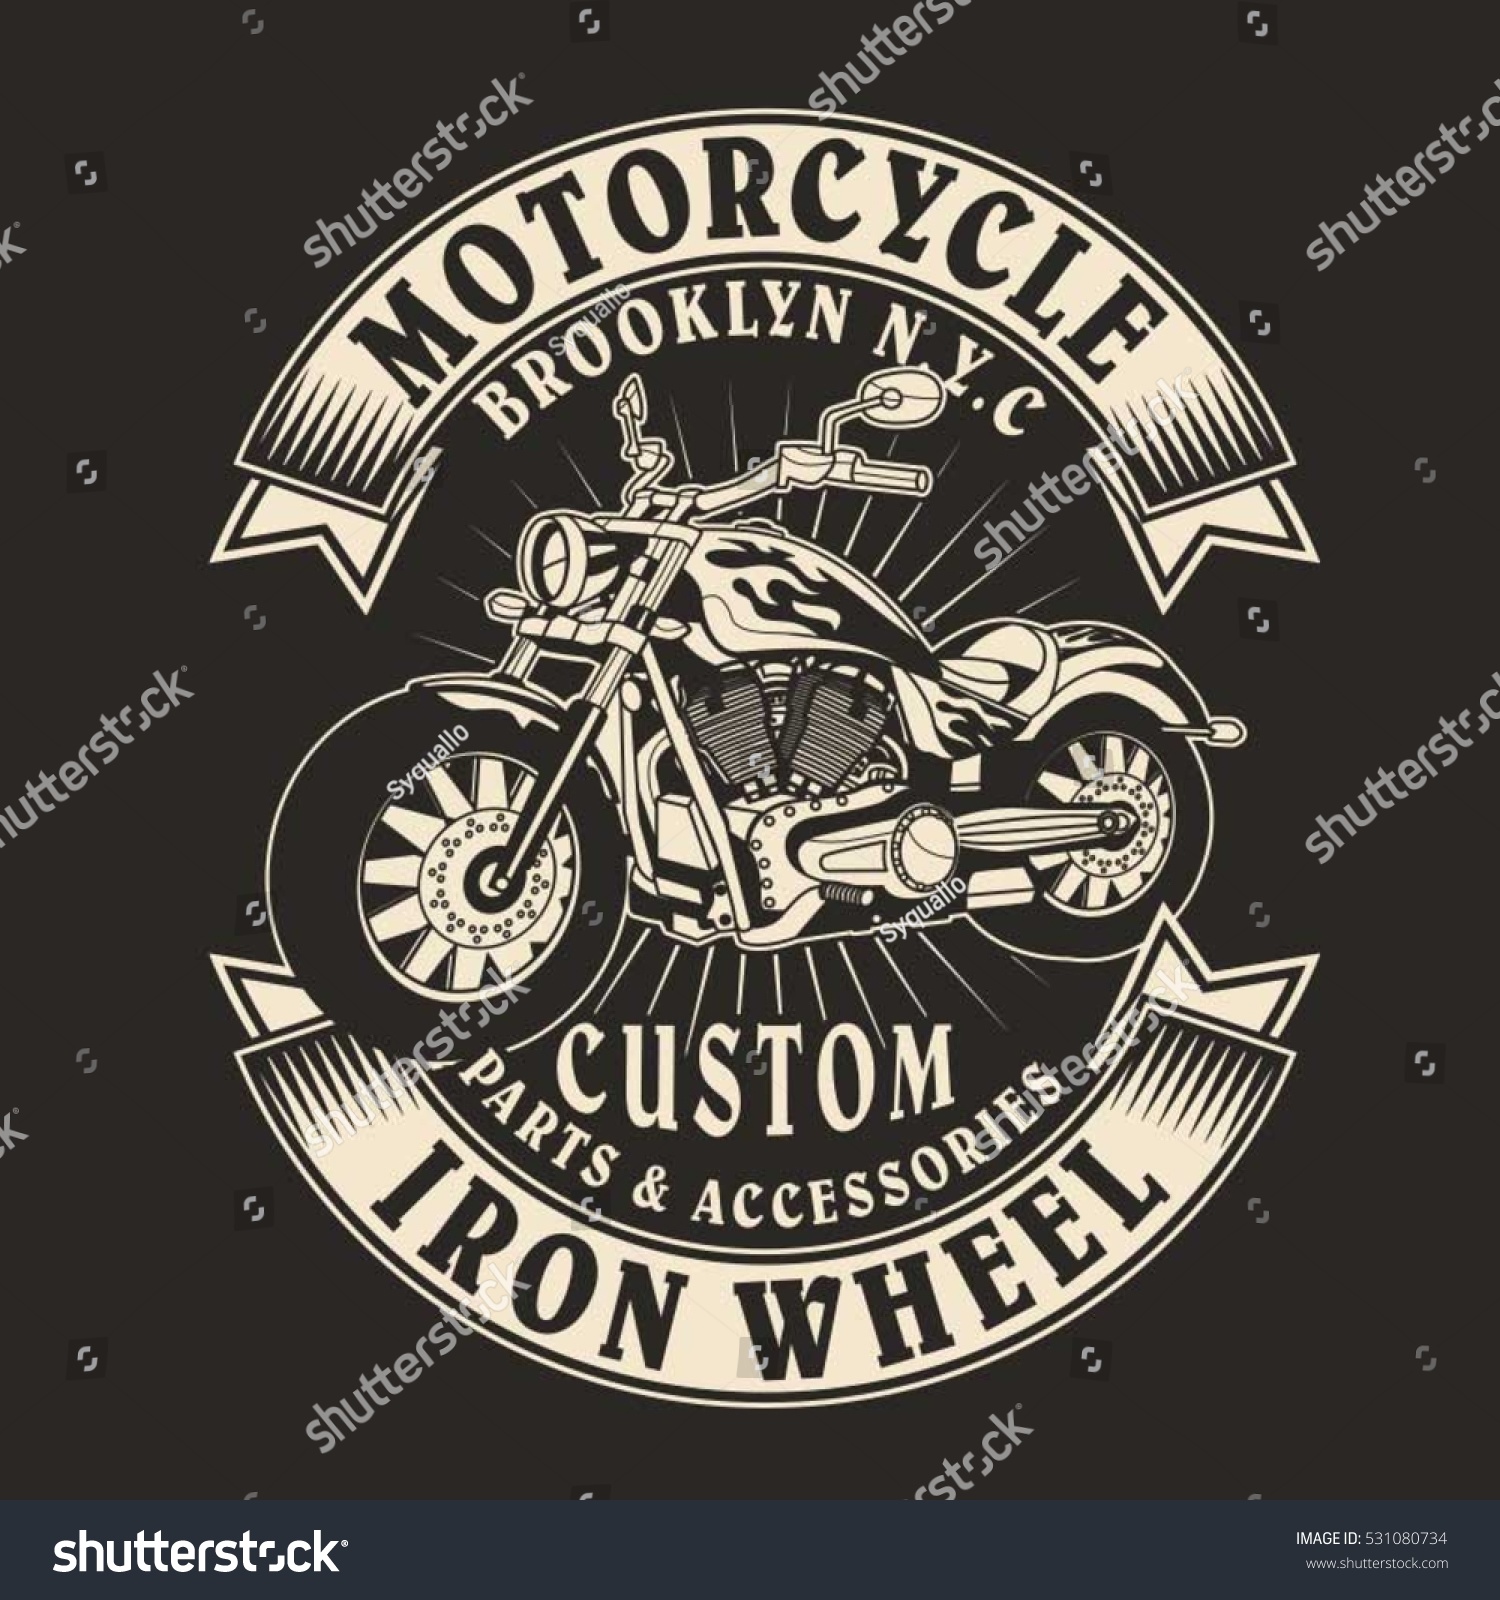 摩托车排版 T 恤图形 矢量库存矢量图 免版税